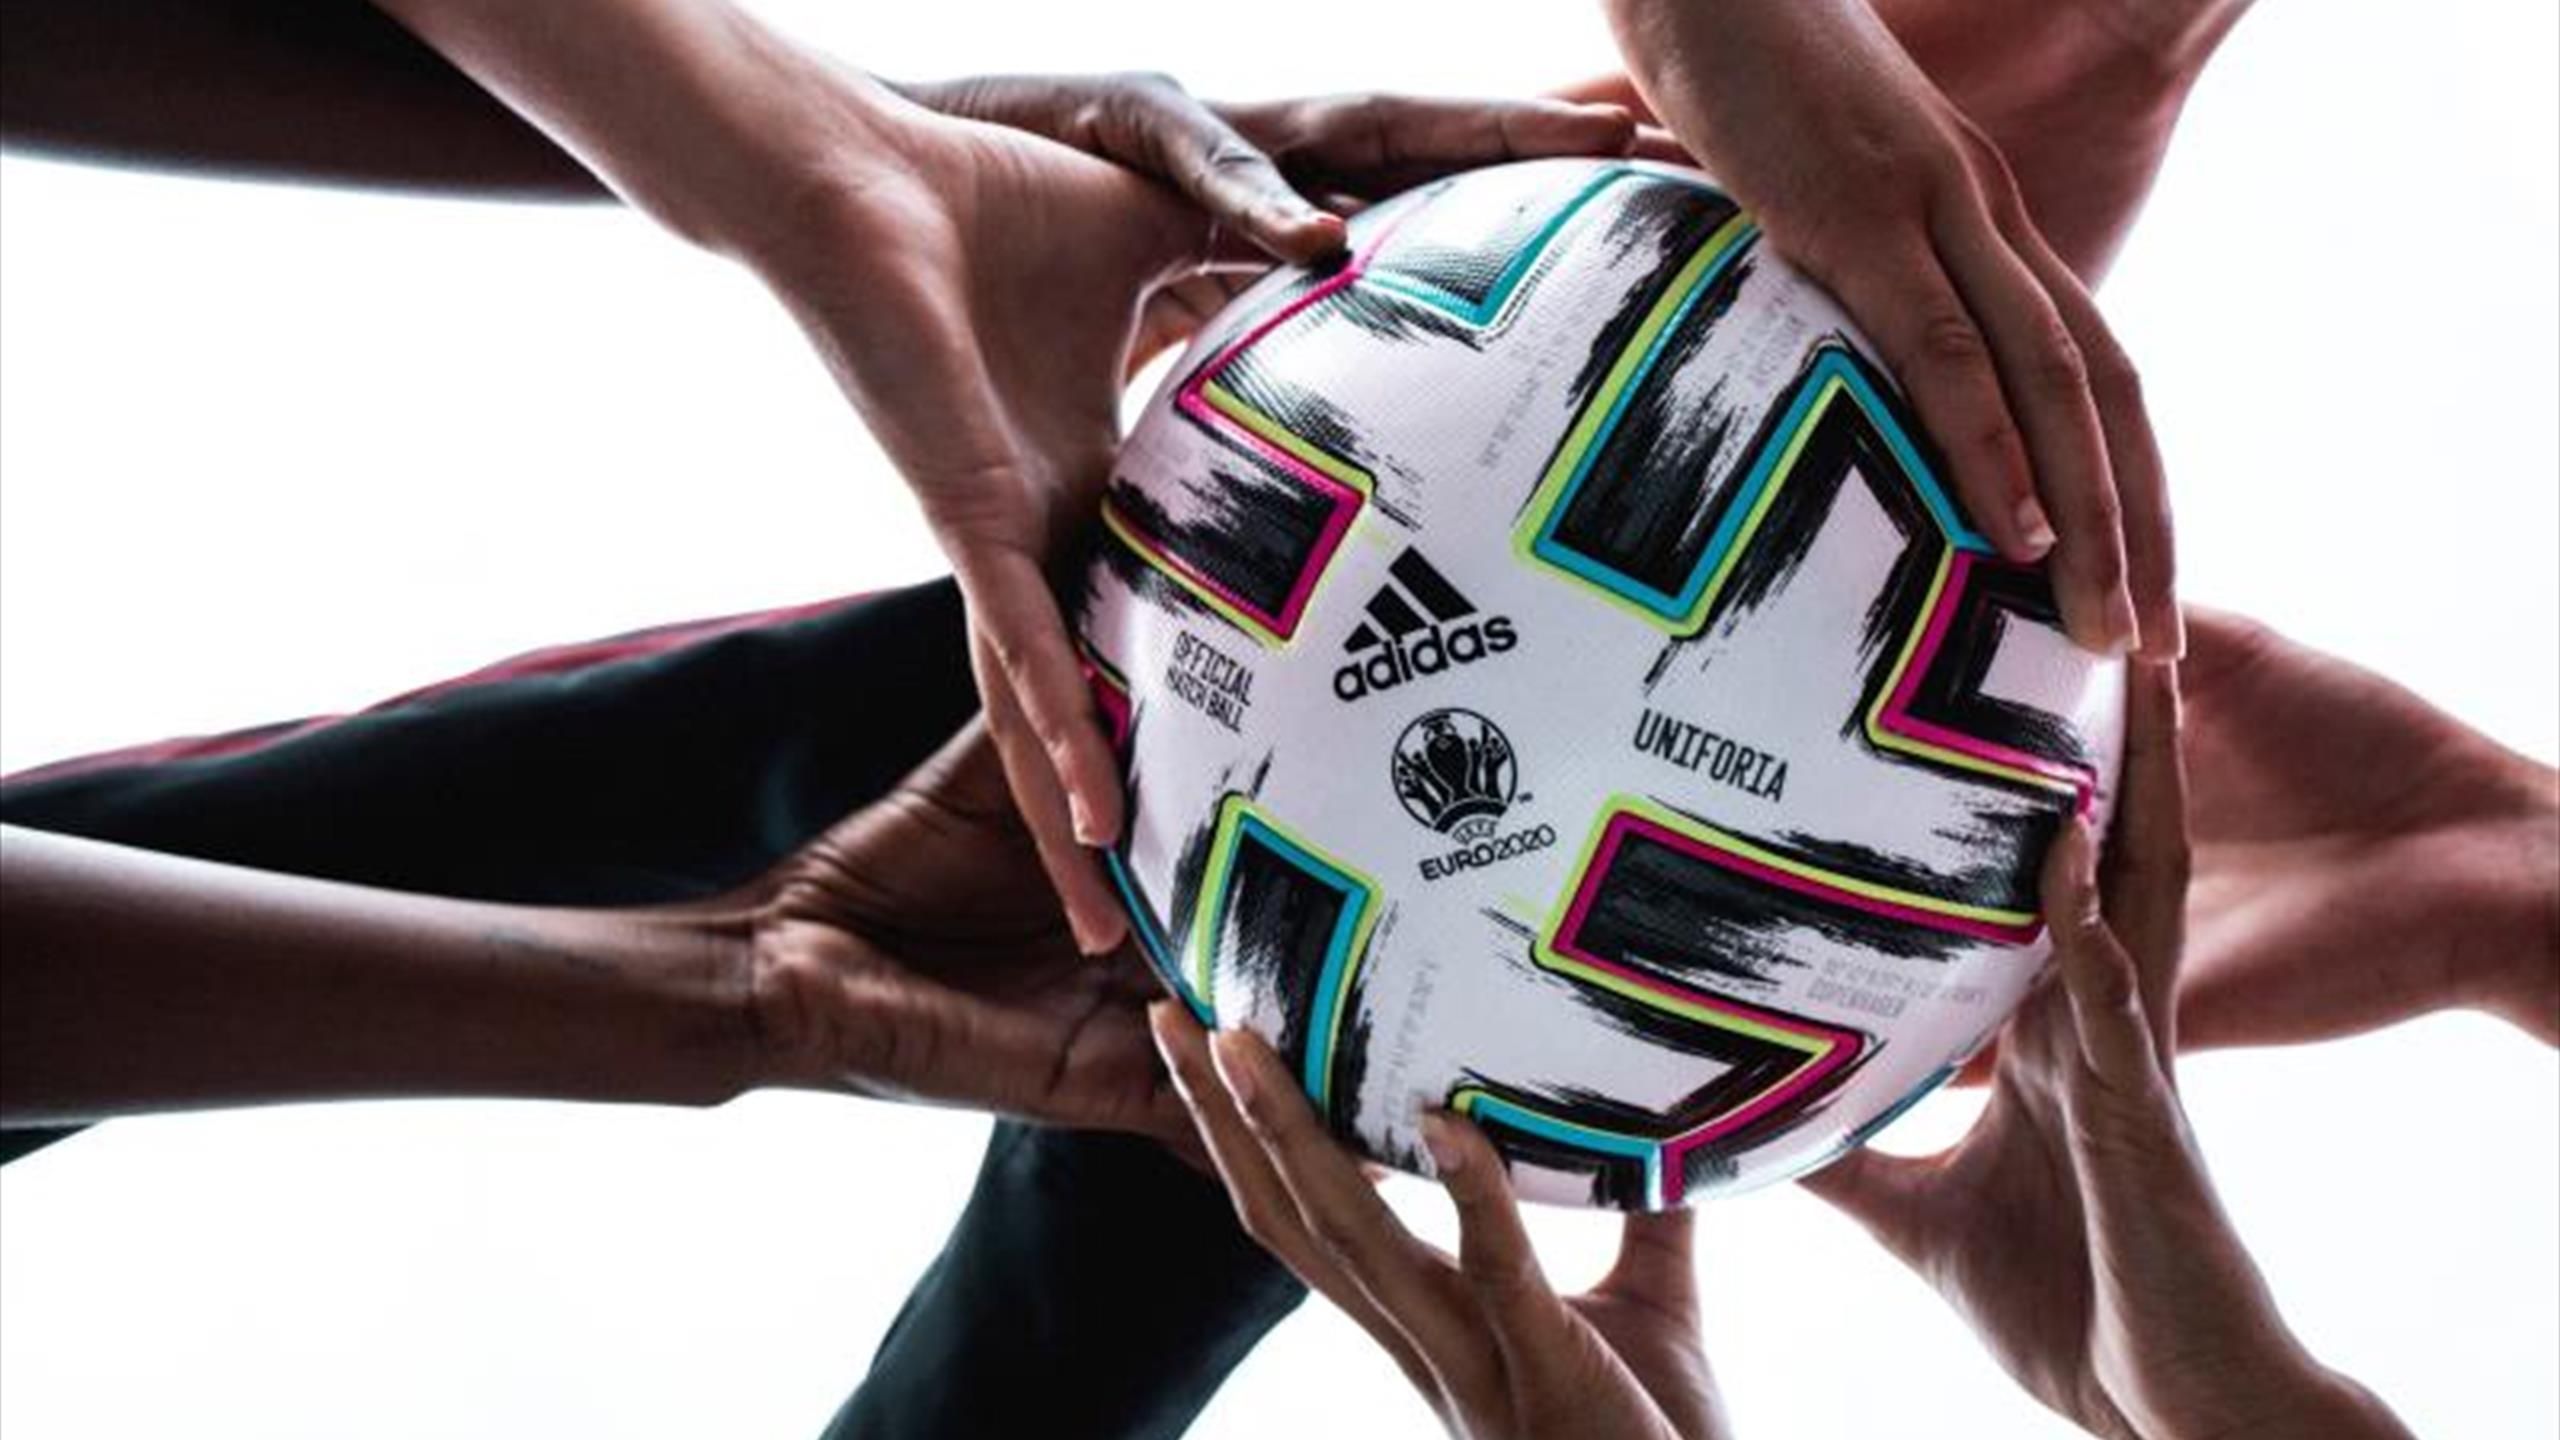 Adidas 'Uniforia', el balón oficial de la Eurocopa 2020 - Eurosport